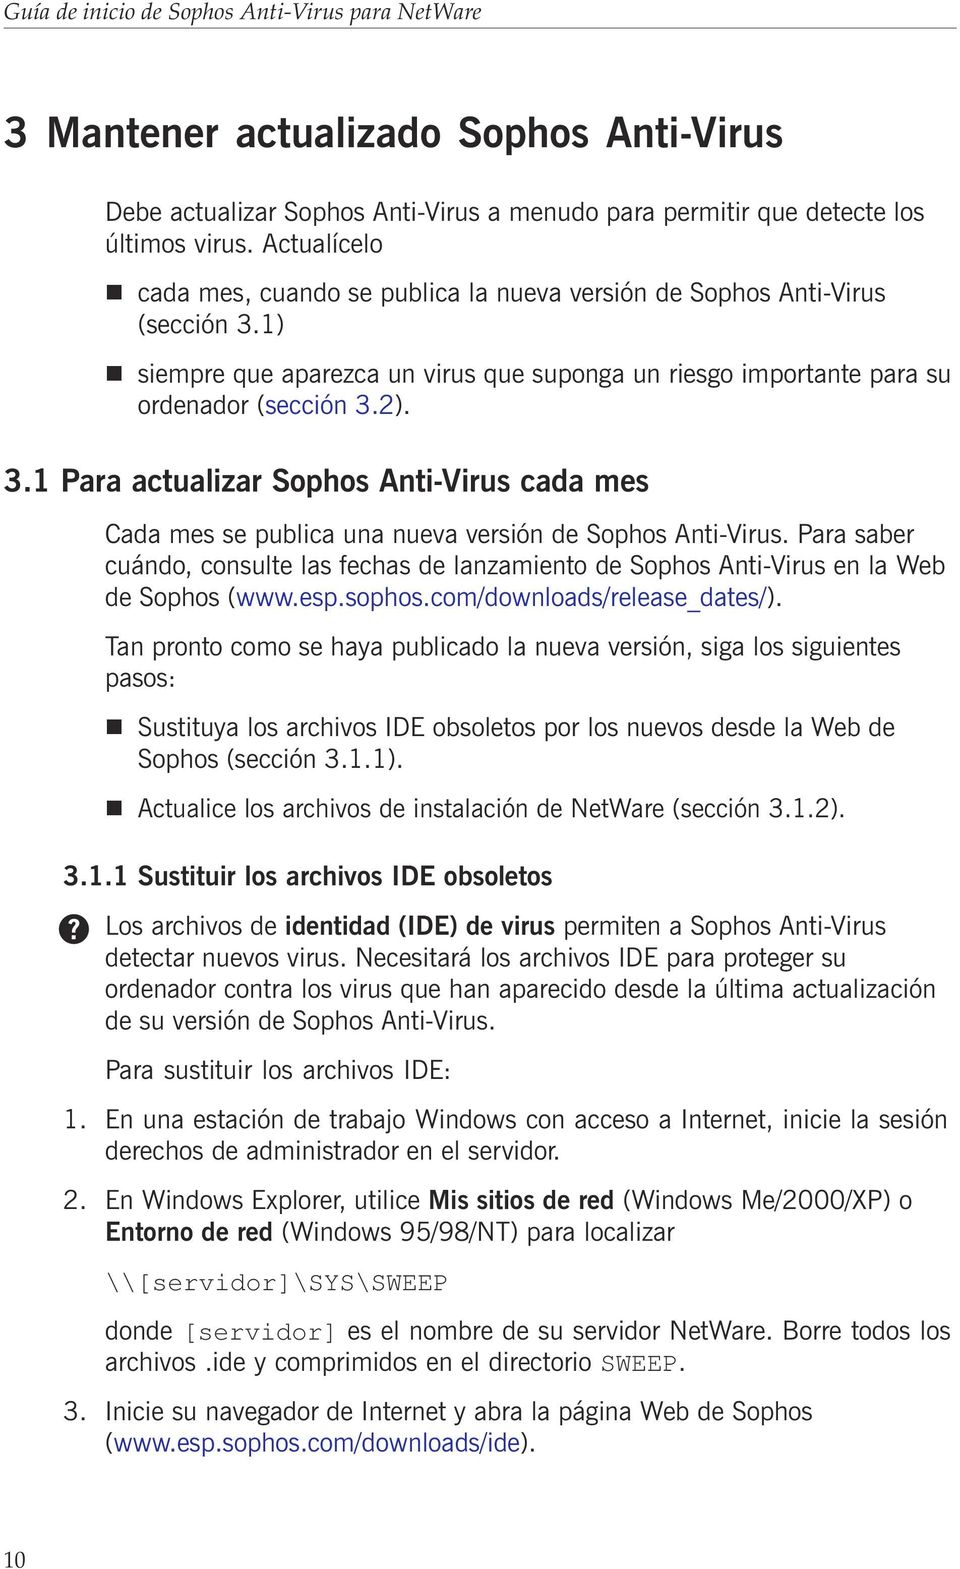 Para saber cuándo, consulte las fechas de lanzamiento de Sophos Anti-Virus en la Web de Sophos (www.esp.sophos.com/downloads/release_dates/).